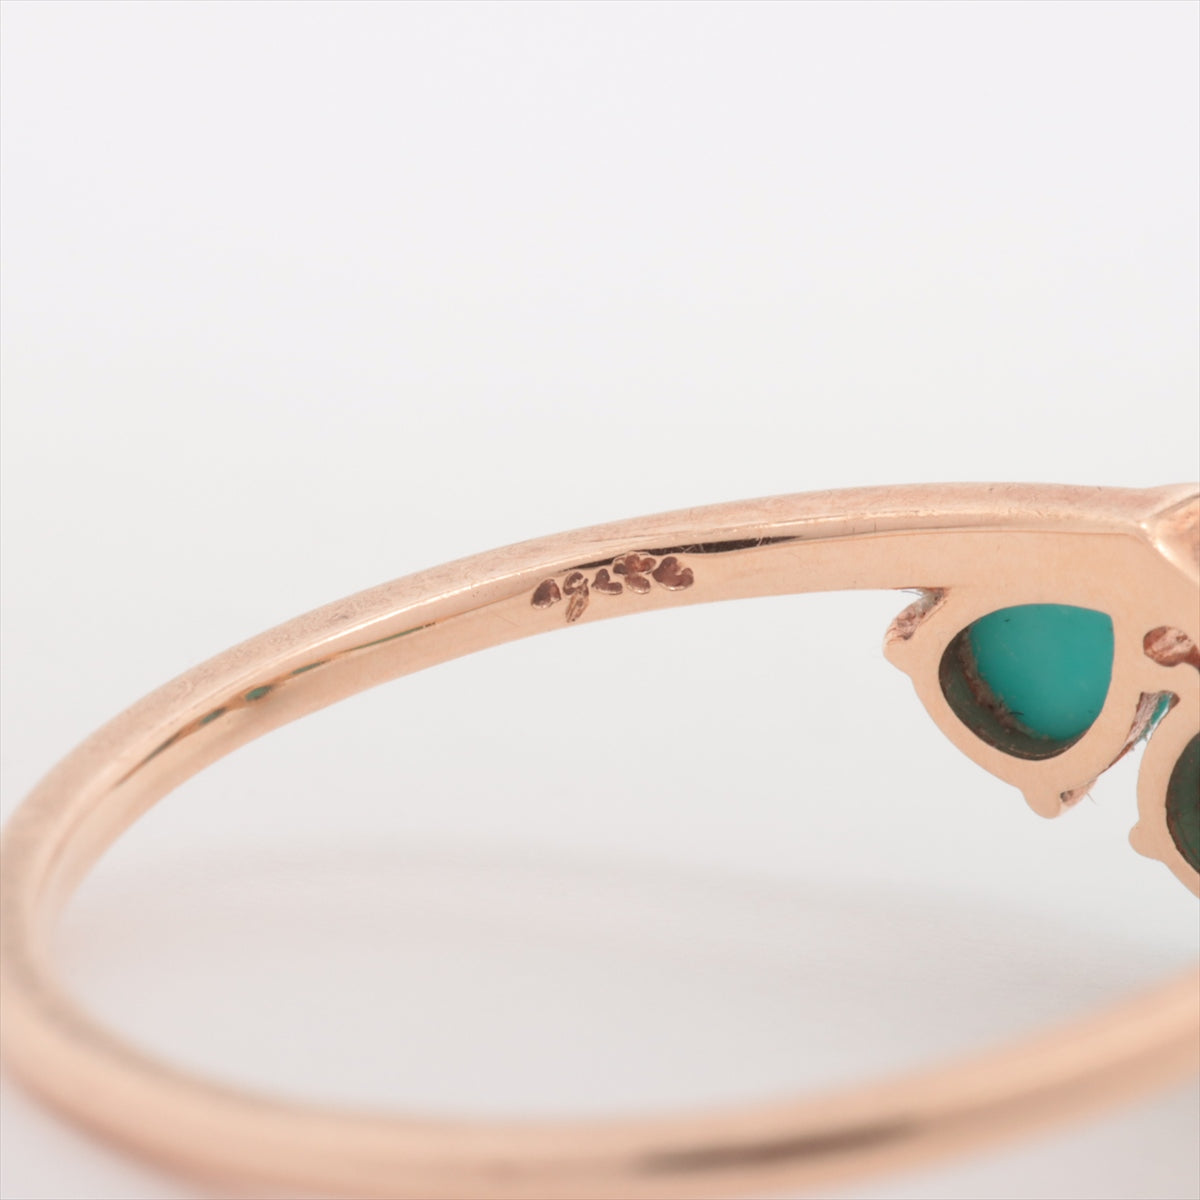 Agat Turquoise Diamond Ring K10 (YG) 1.1g 0.01 E